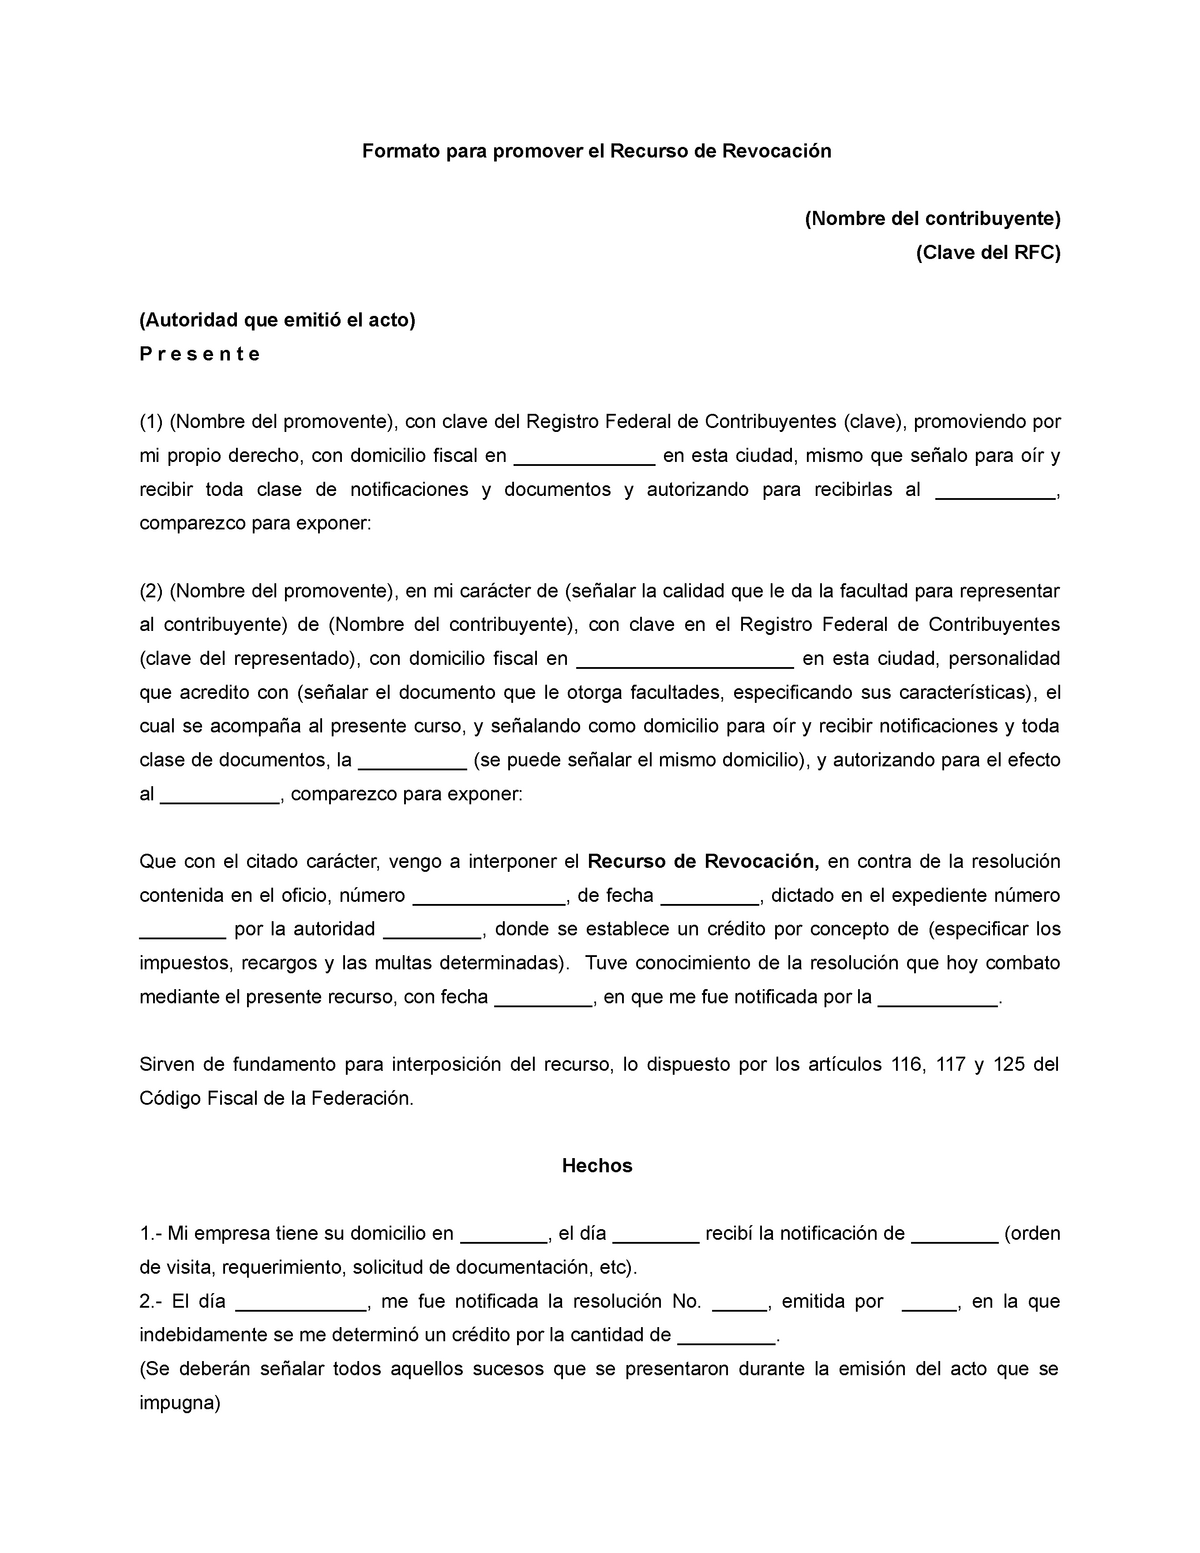 Formato del recurso de revocacion - Formato para promover el Recurso de  Revocación (Nombre del - Studocu